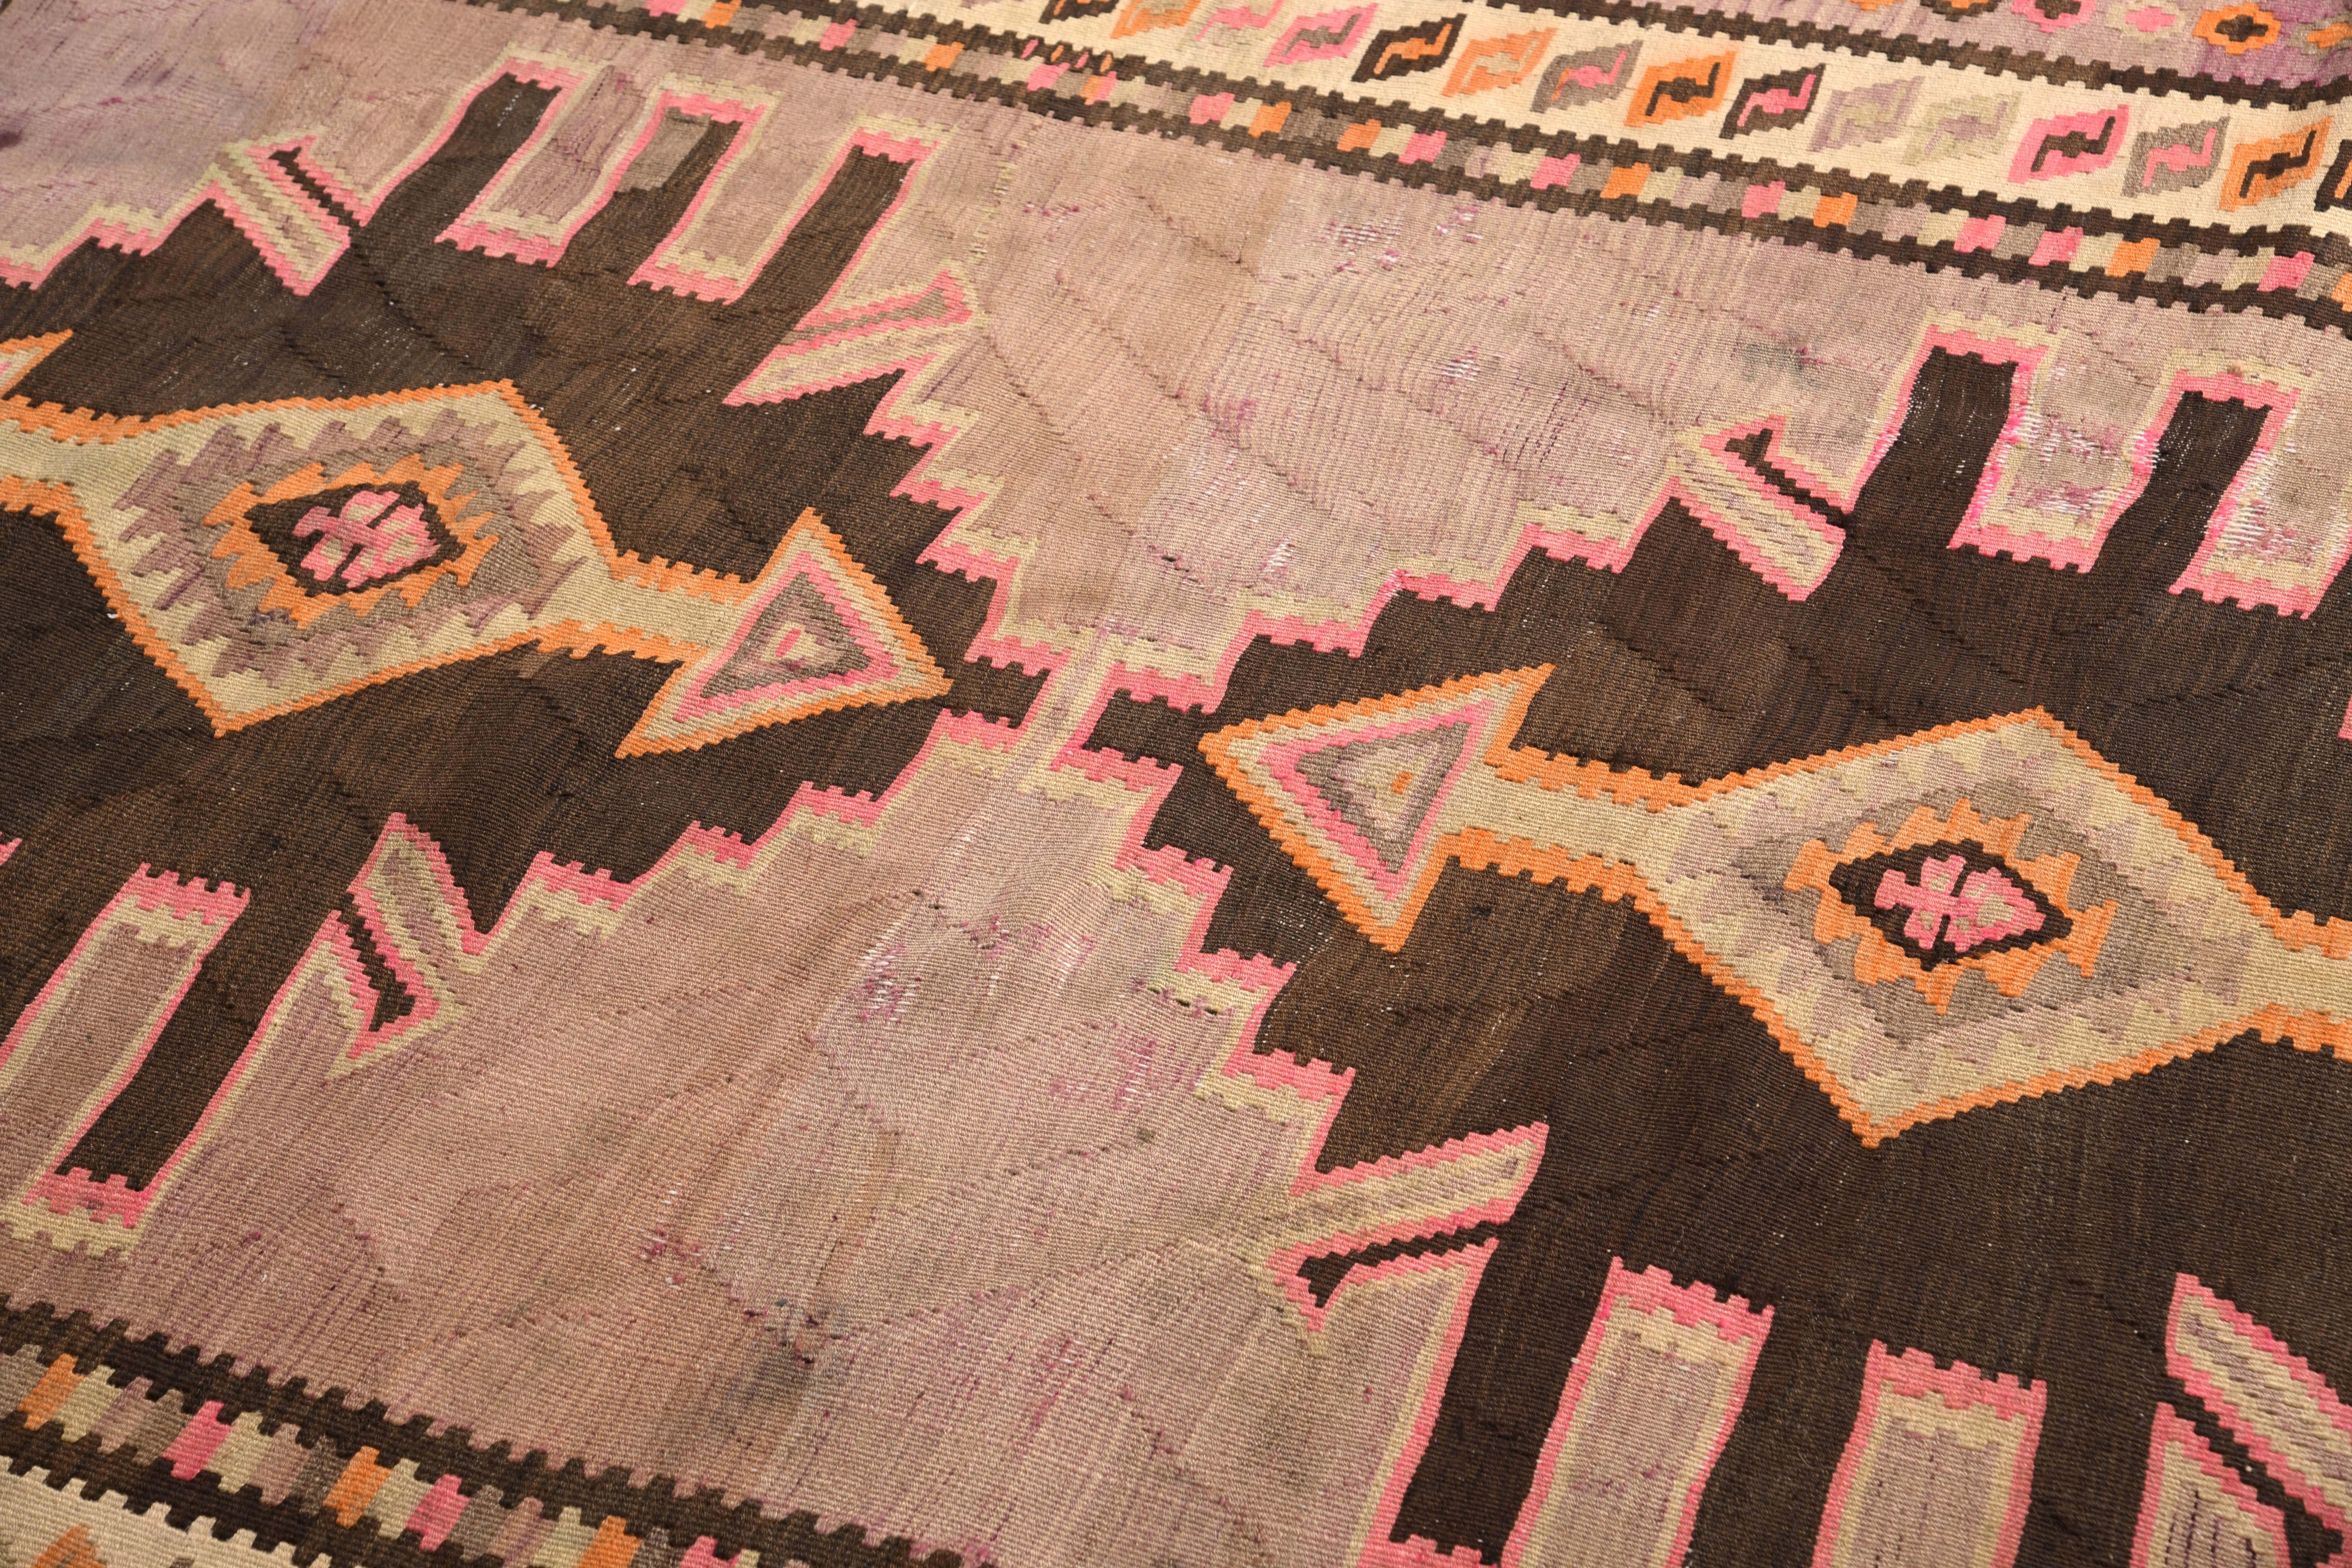 Hand-Woven Midcentury Vintage Persian Kilim Rug in Beige Geometric Pattern by Rug & Kilim